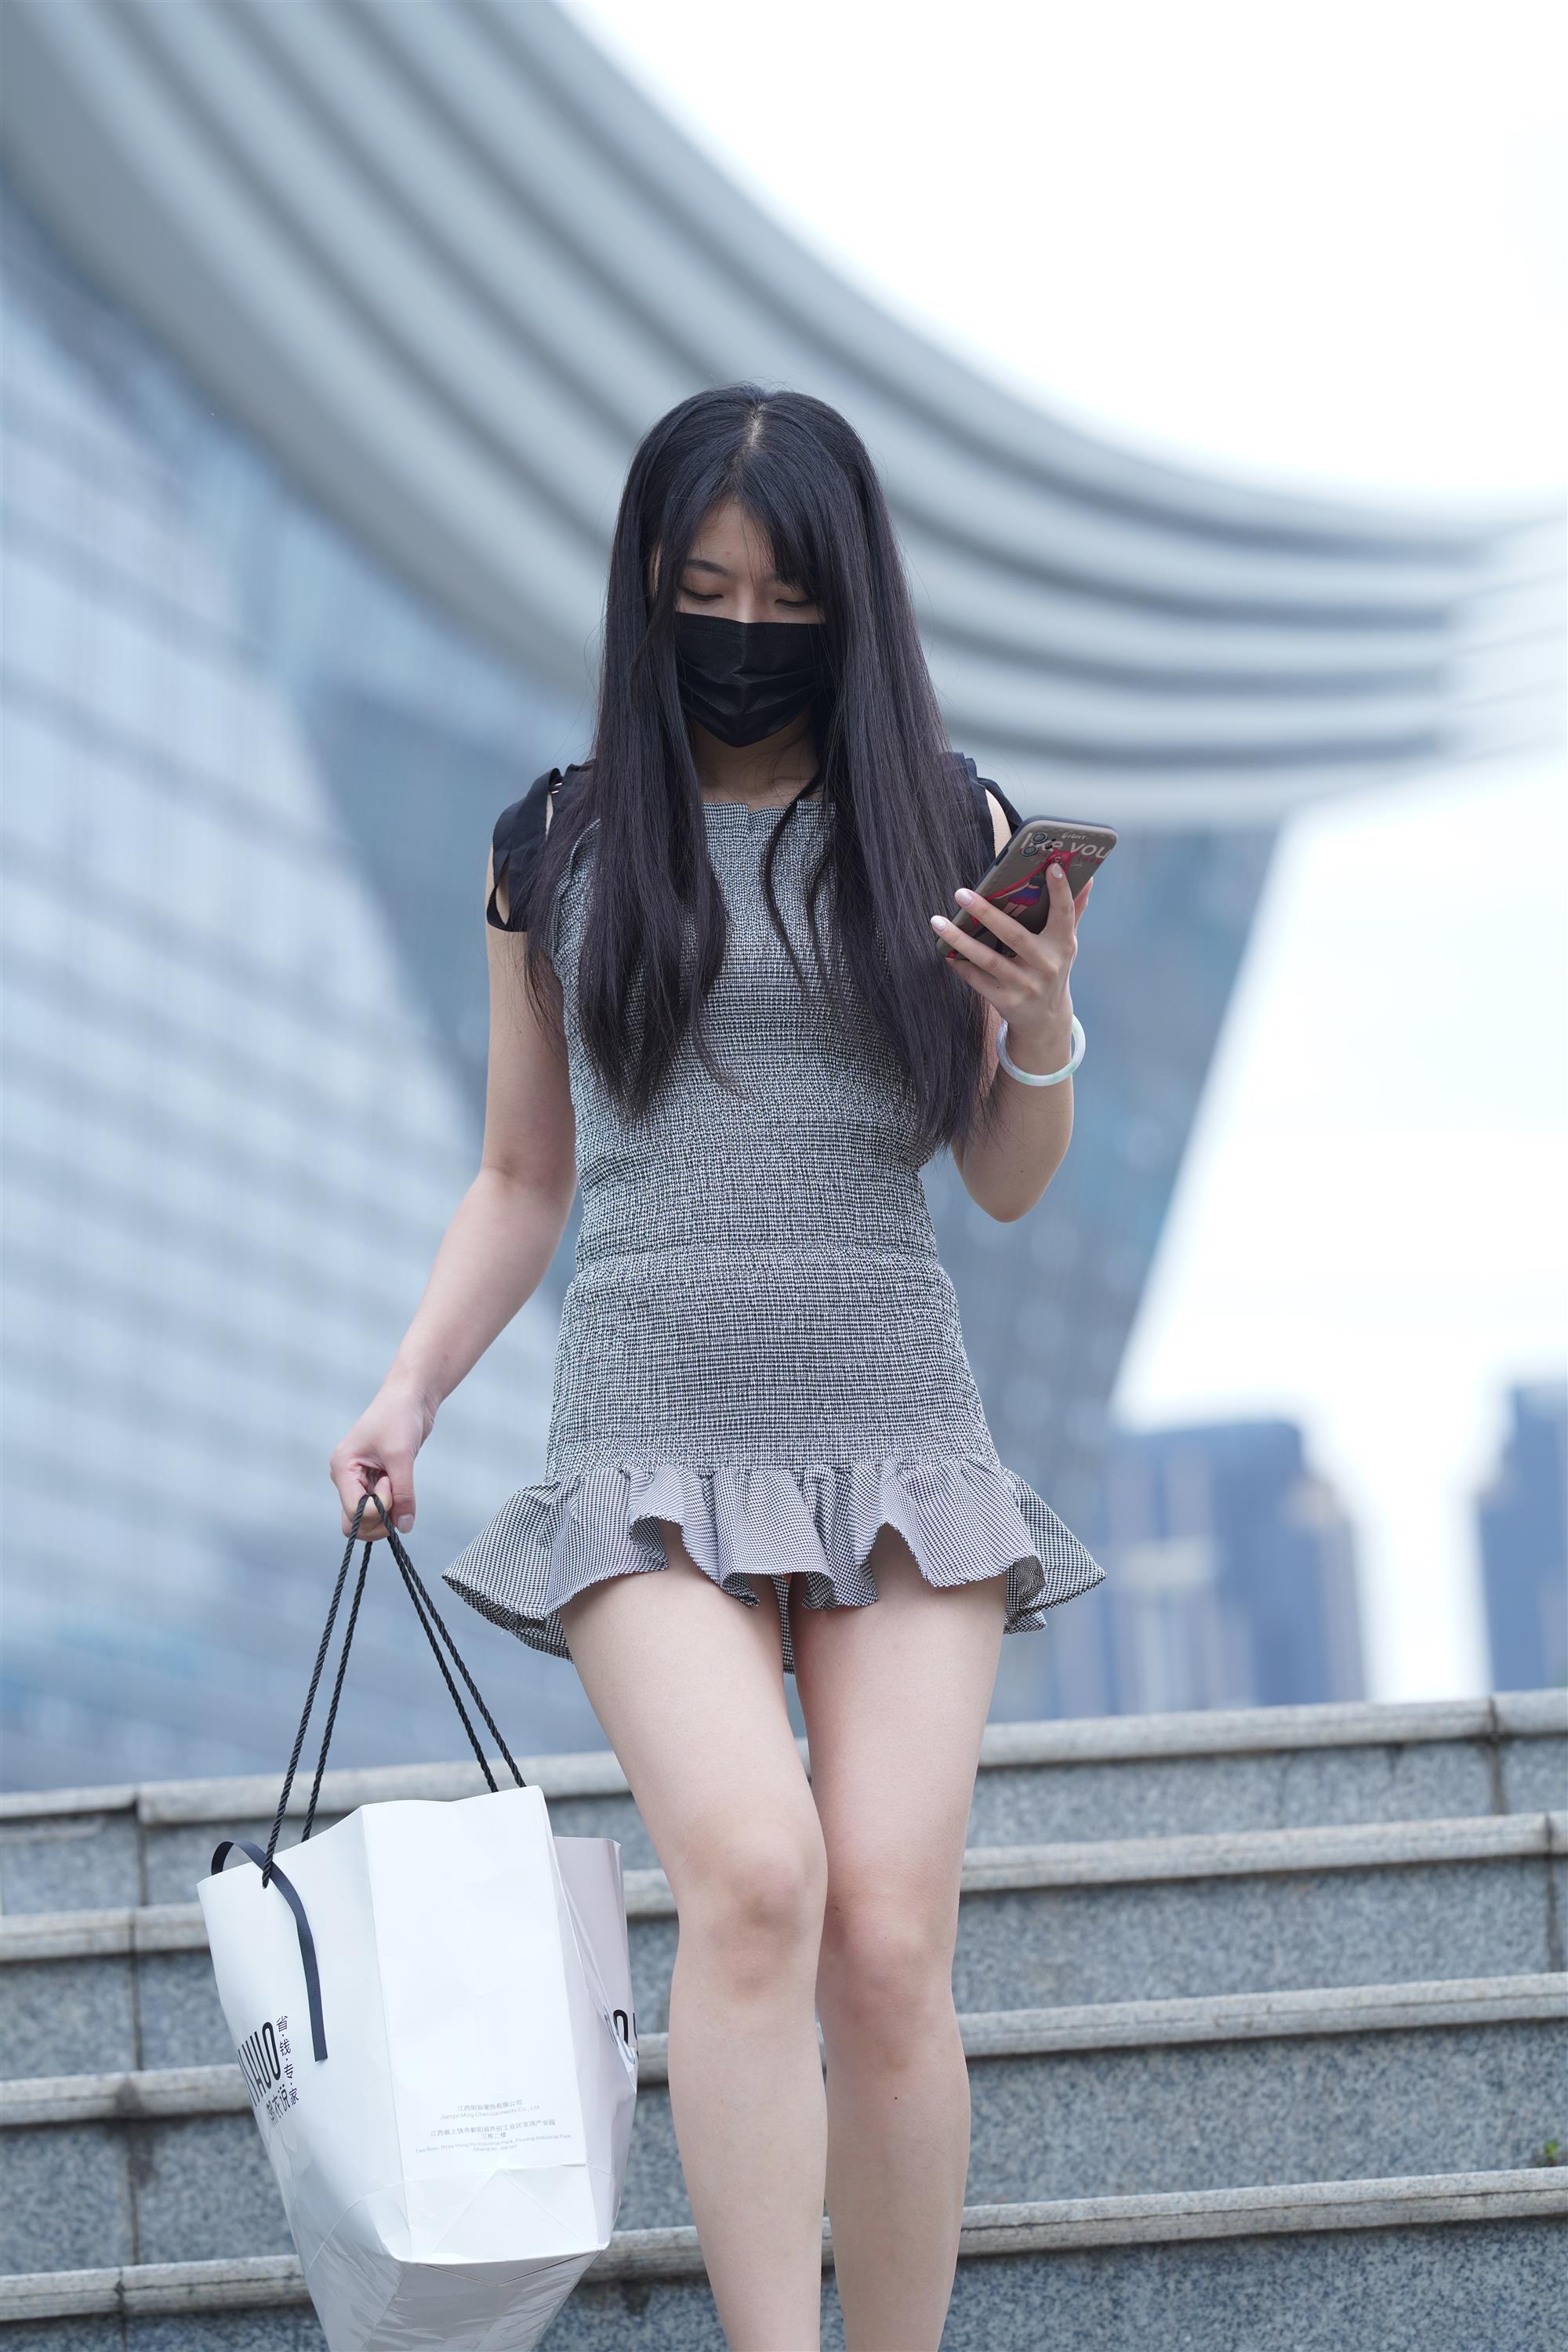 Street Girl In Short Skirt - 180.jpg